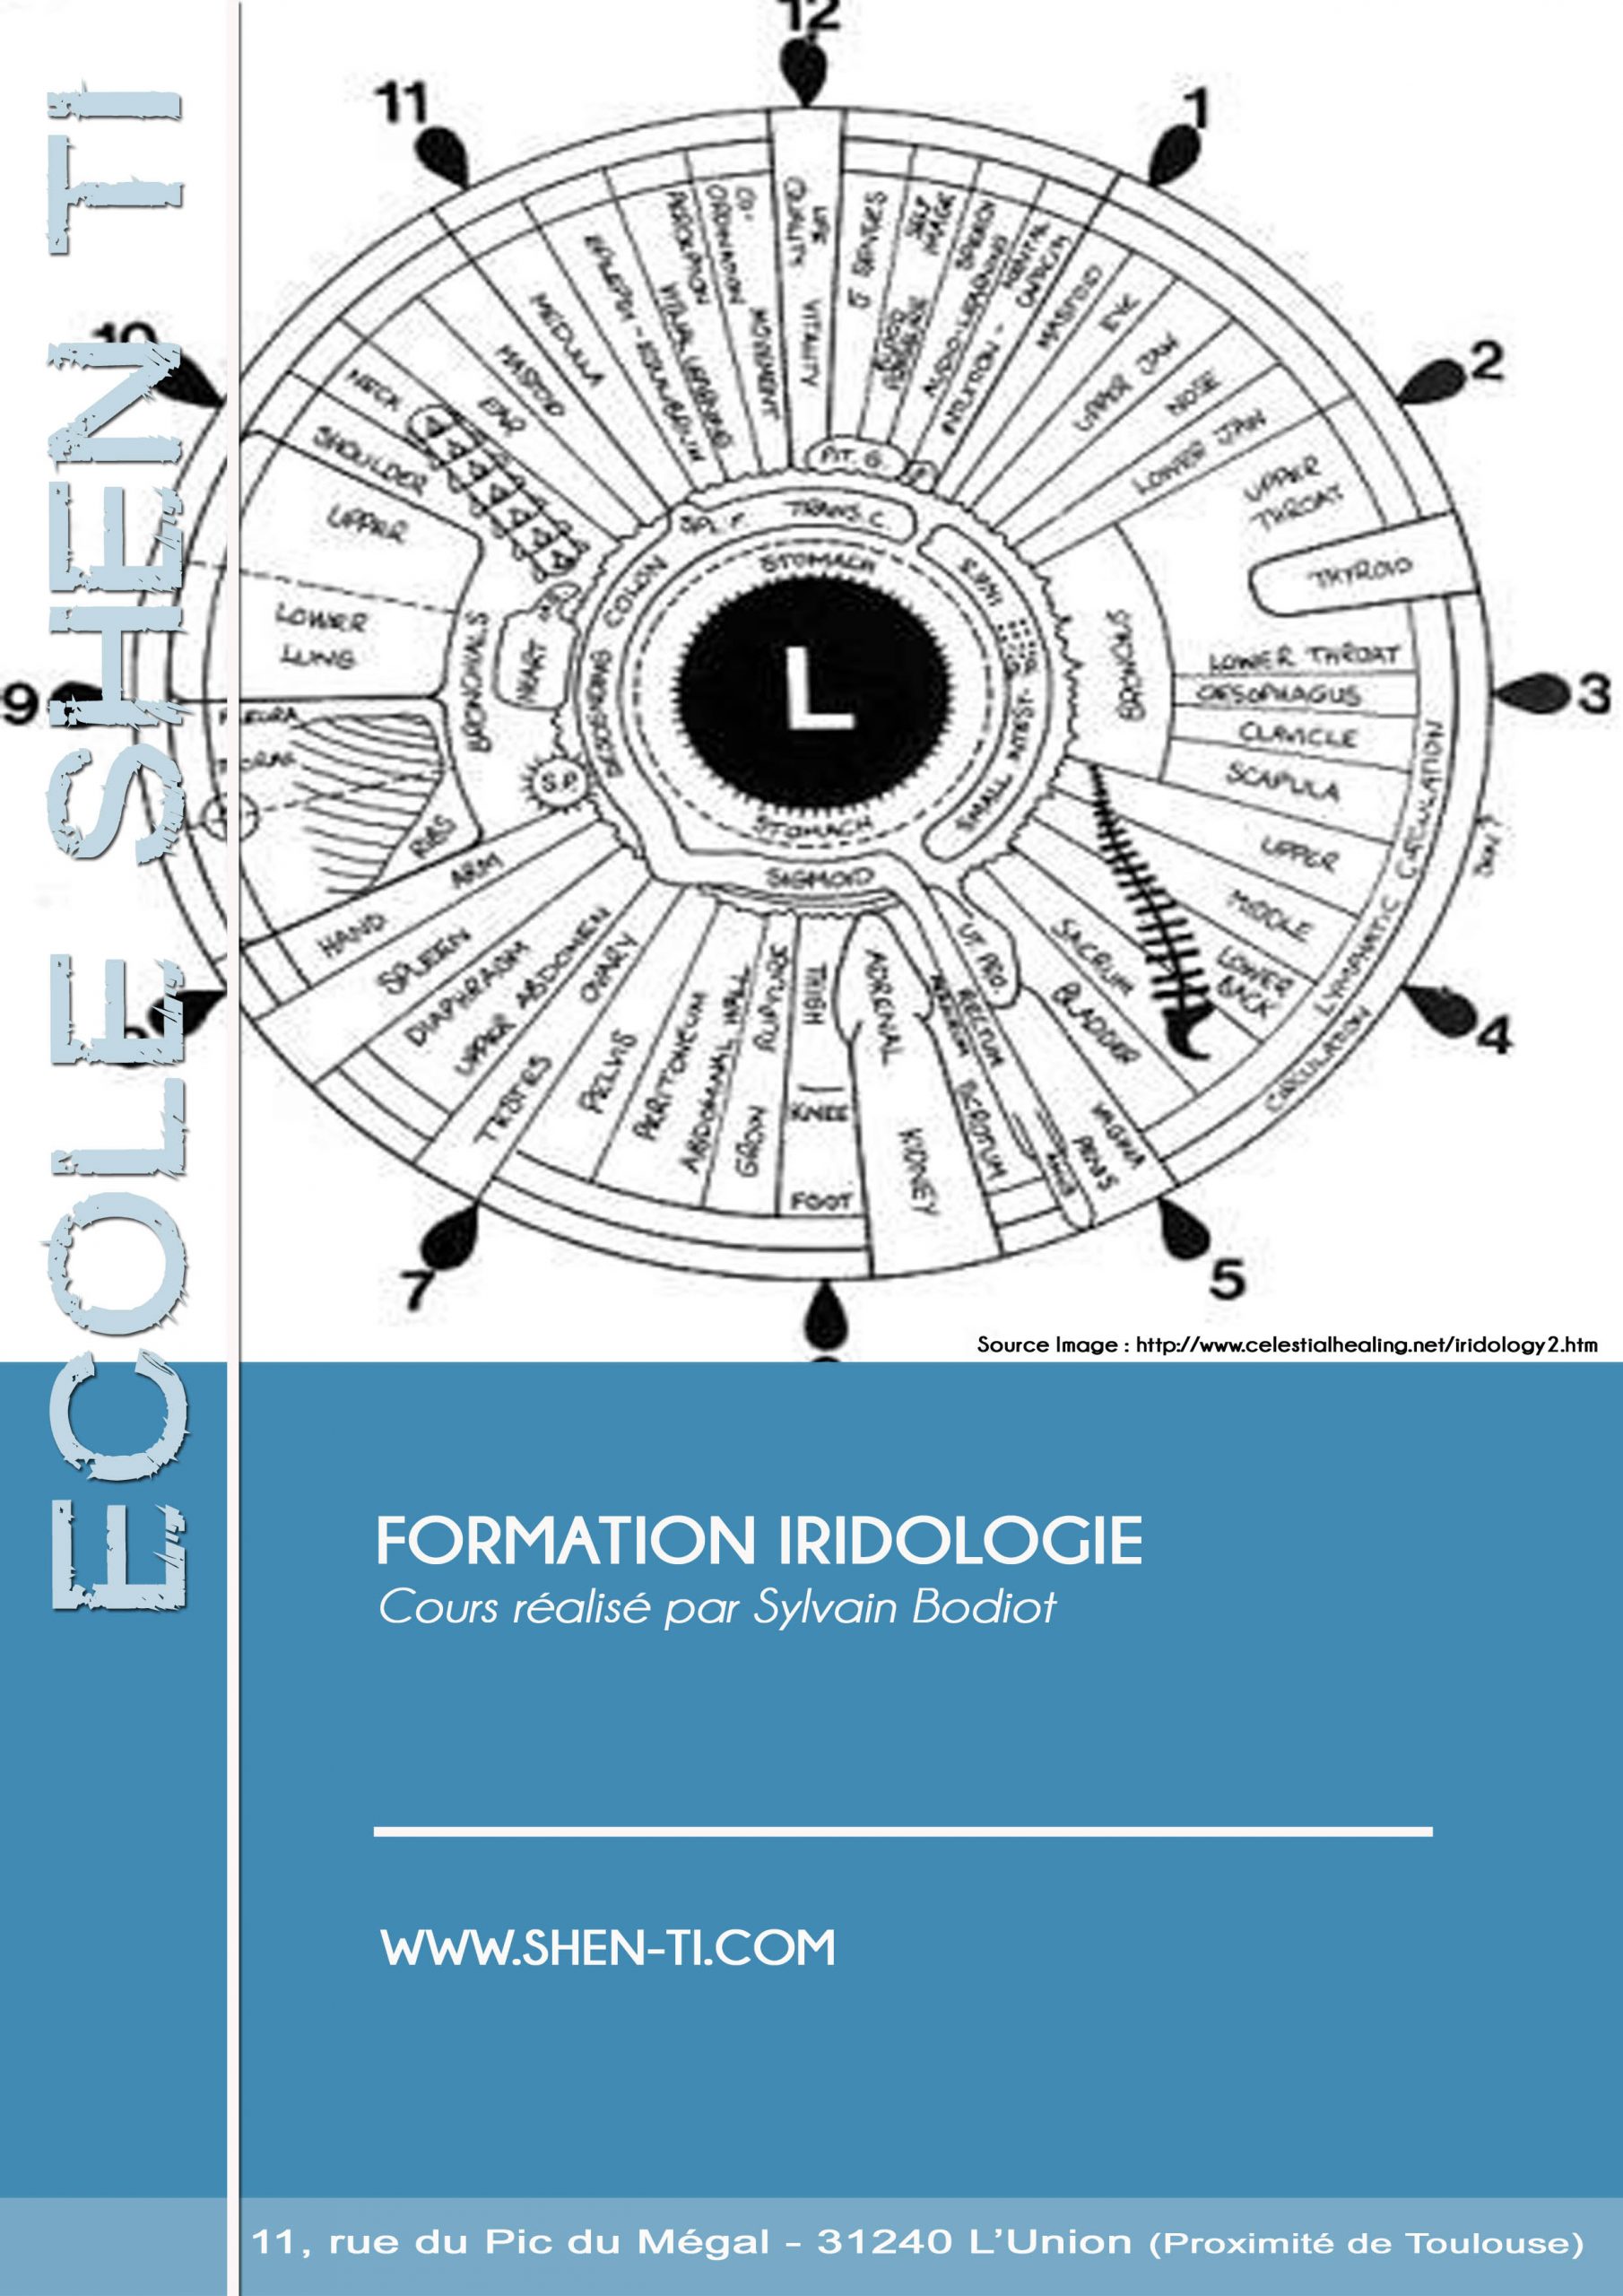 FORMATION IRIDOLOGIE A DISTANCE EN LIGNE E-LEARNING